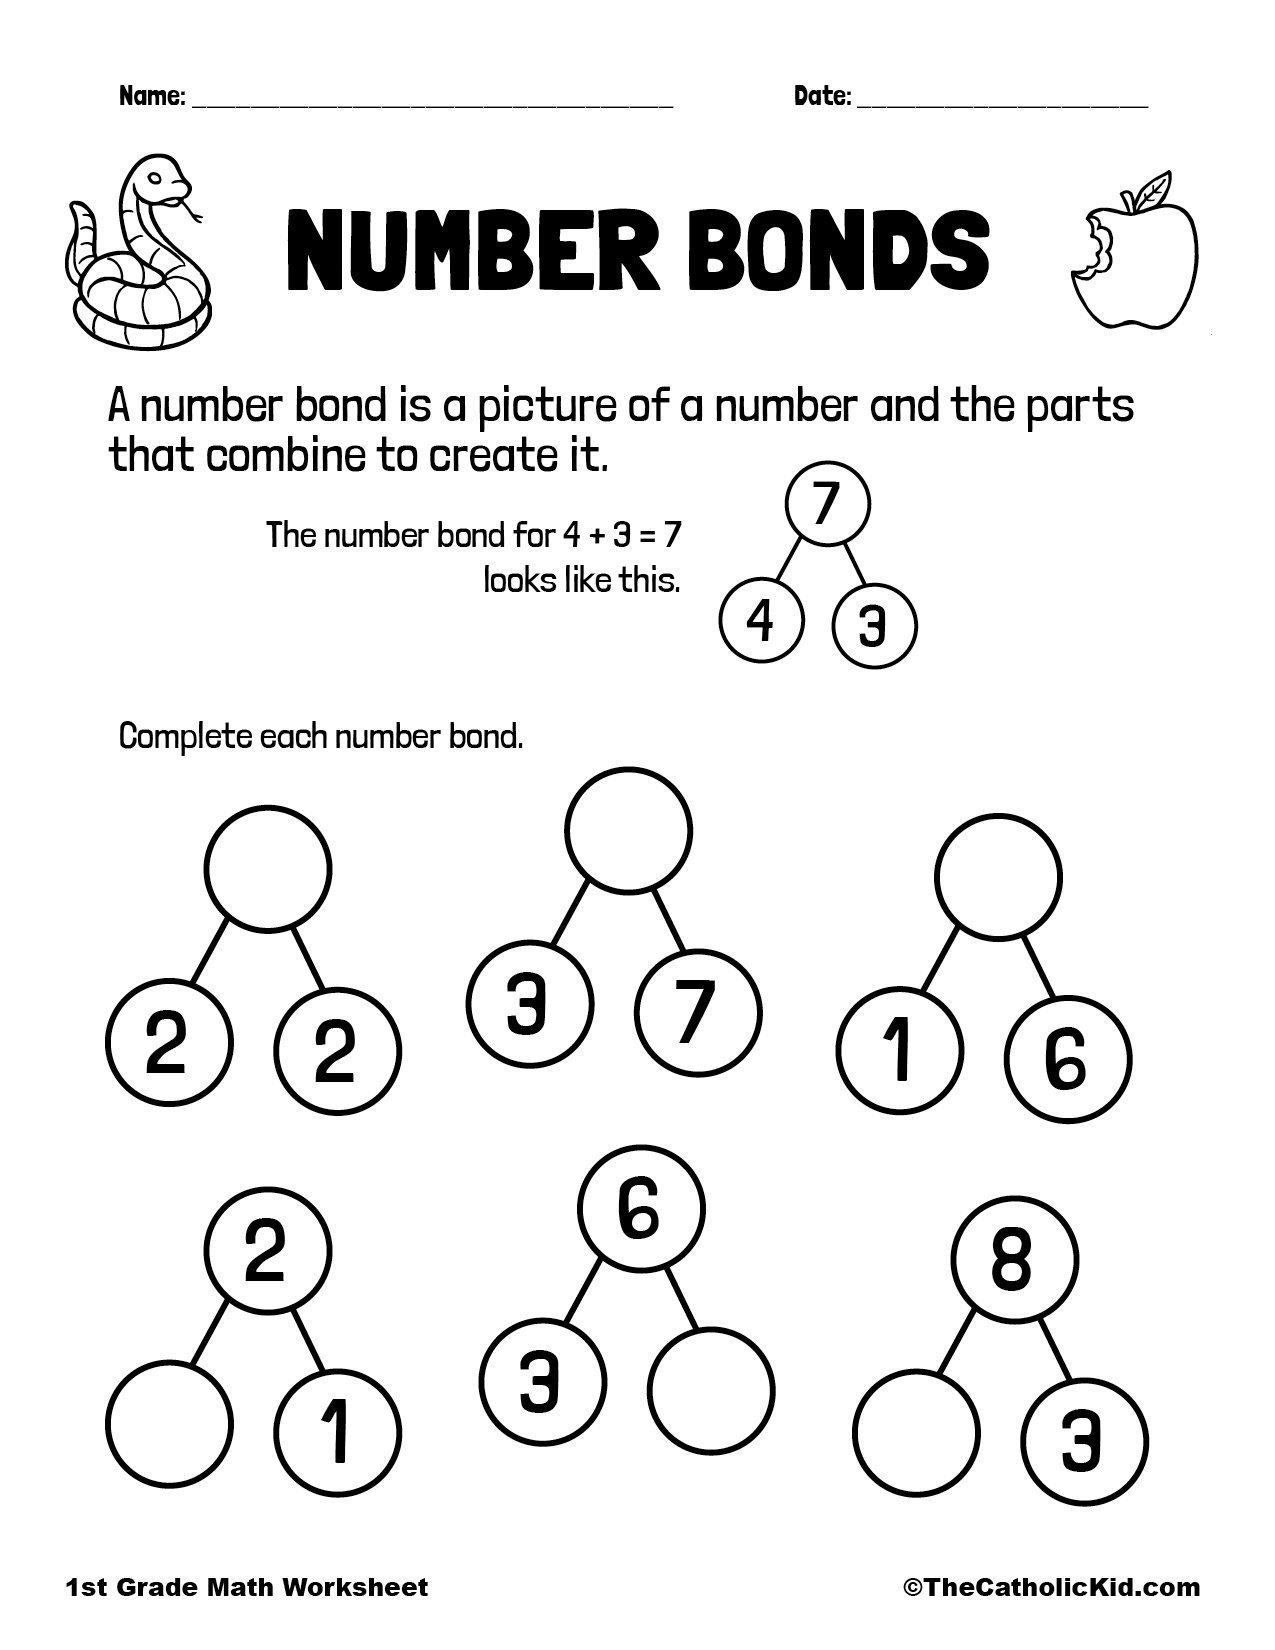 Number bonds of 11-15 worksheets | K5 Learning - Worksheets Library